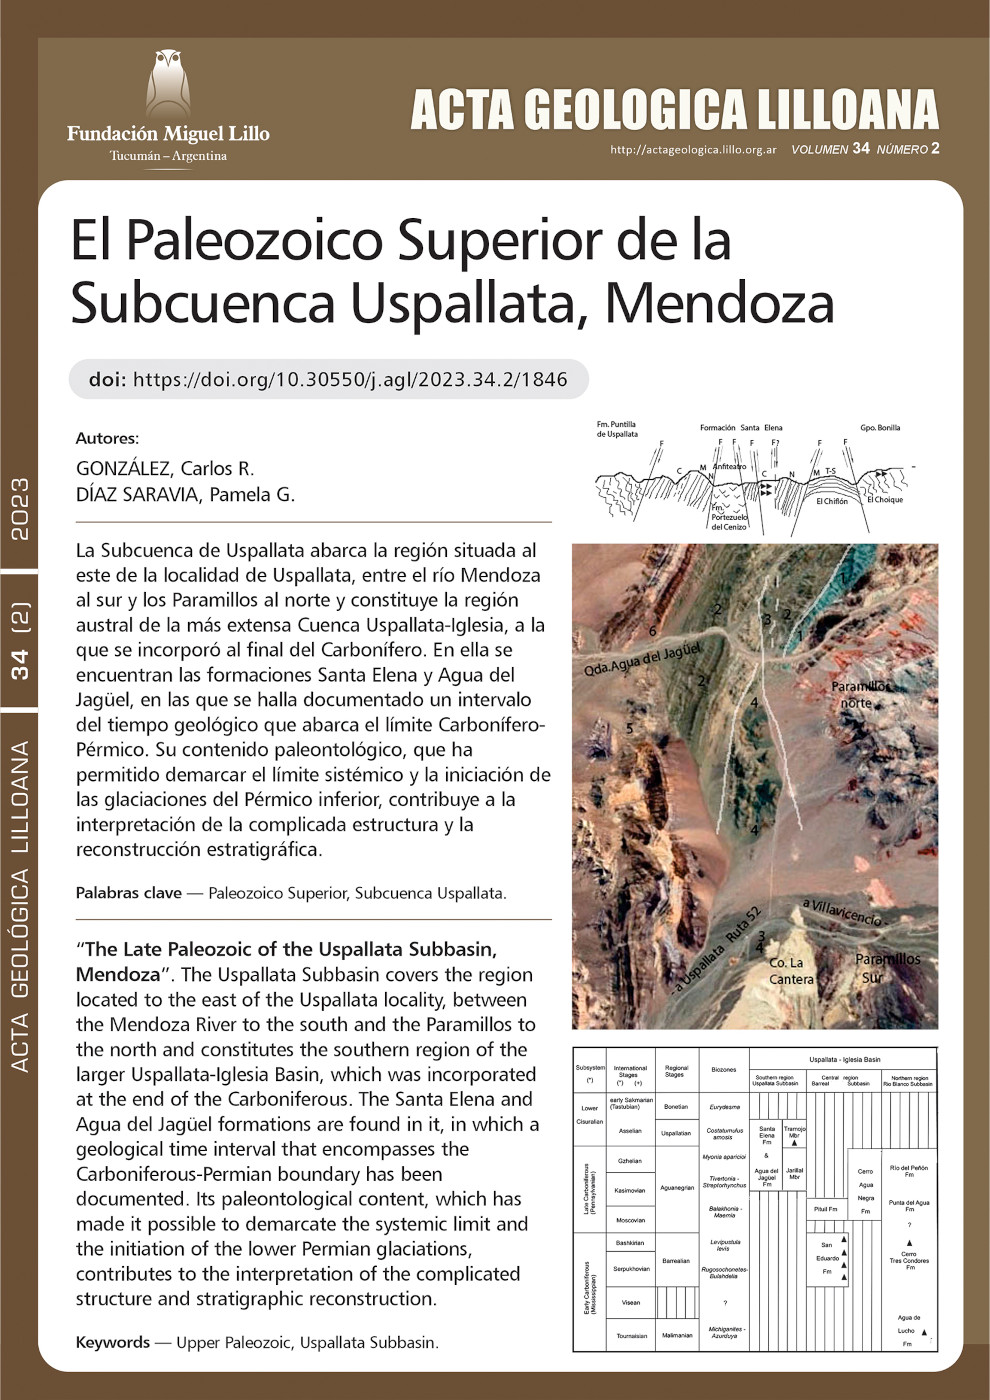 El Paleozoico Superior de la Subcuenca Uspallata, Mendoza